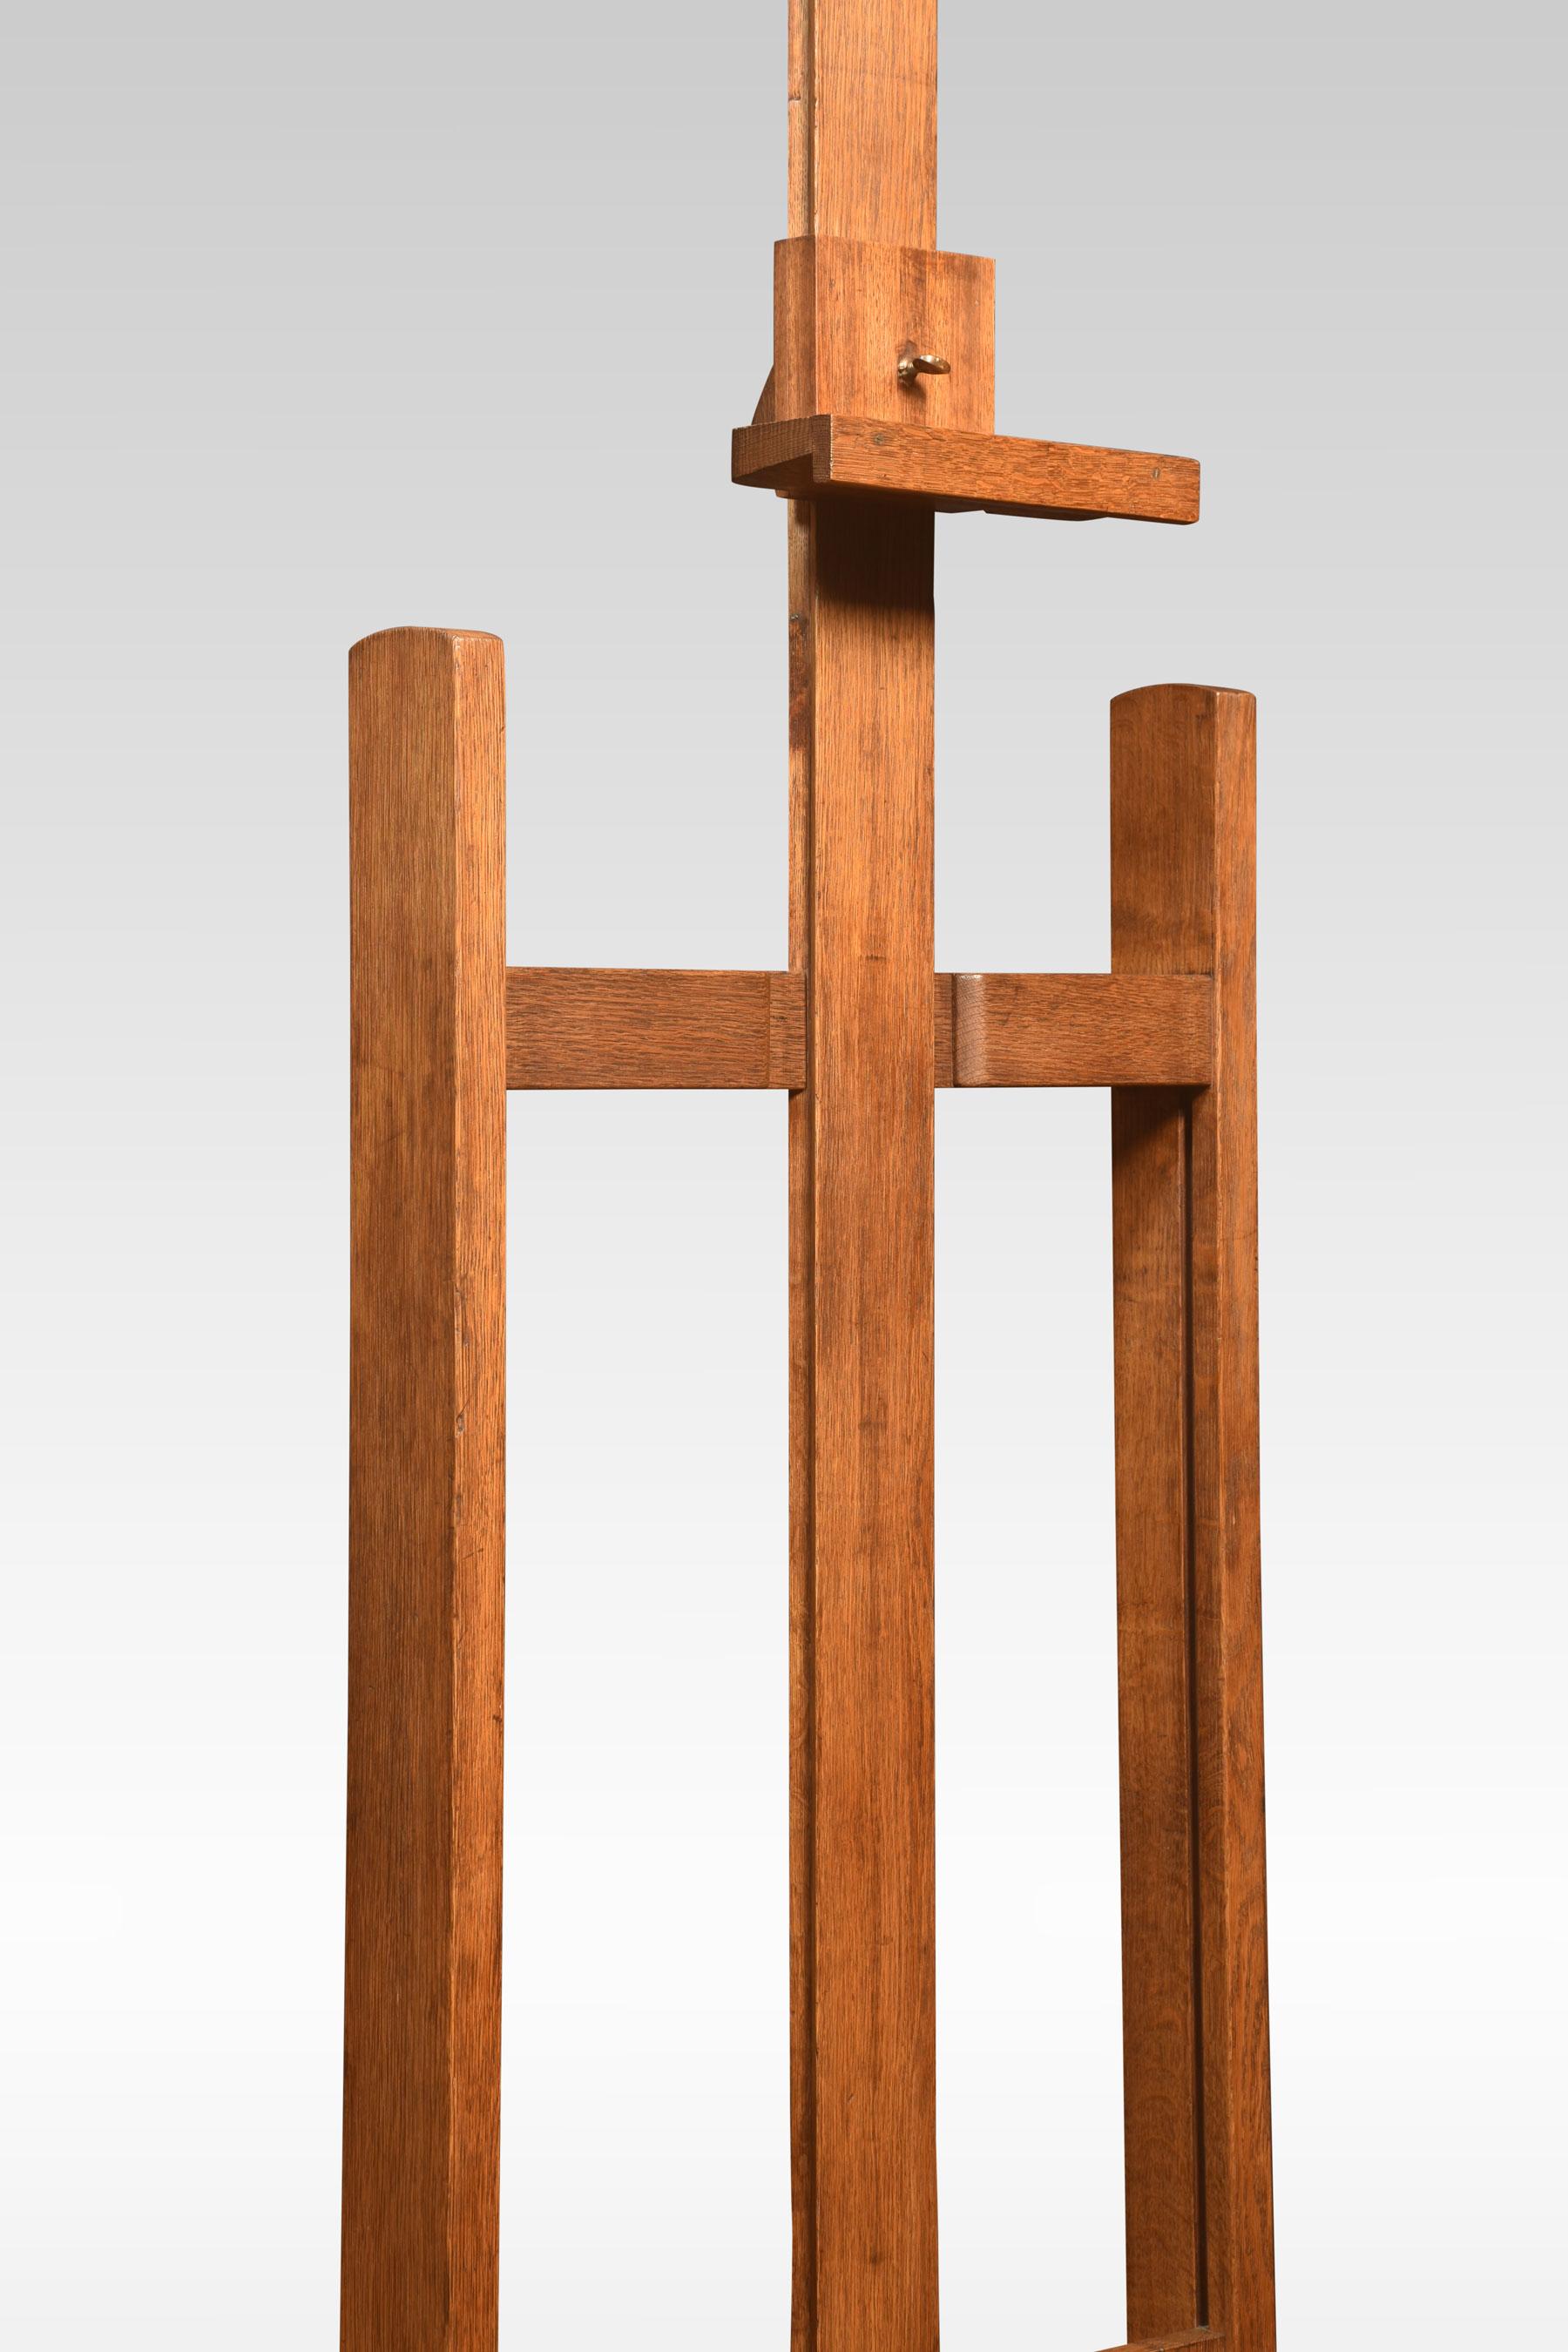 Verstellbare Atelierstaffelei aus Eichenholz, die auf einem Gestell mit Rollen endet.
Abmessungen
Höhe 73 Zoll einstellbar bis 106,5 Zoll
Breite 24 Zoll
Tiefe 28 Zoll